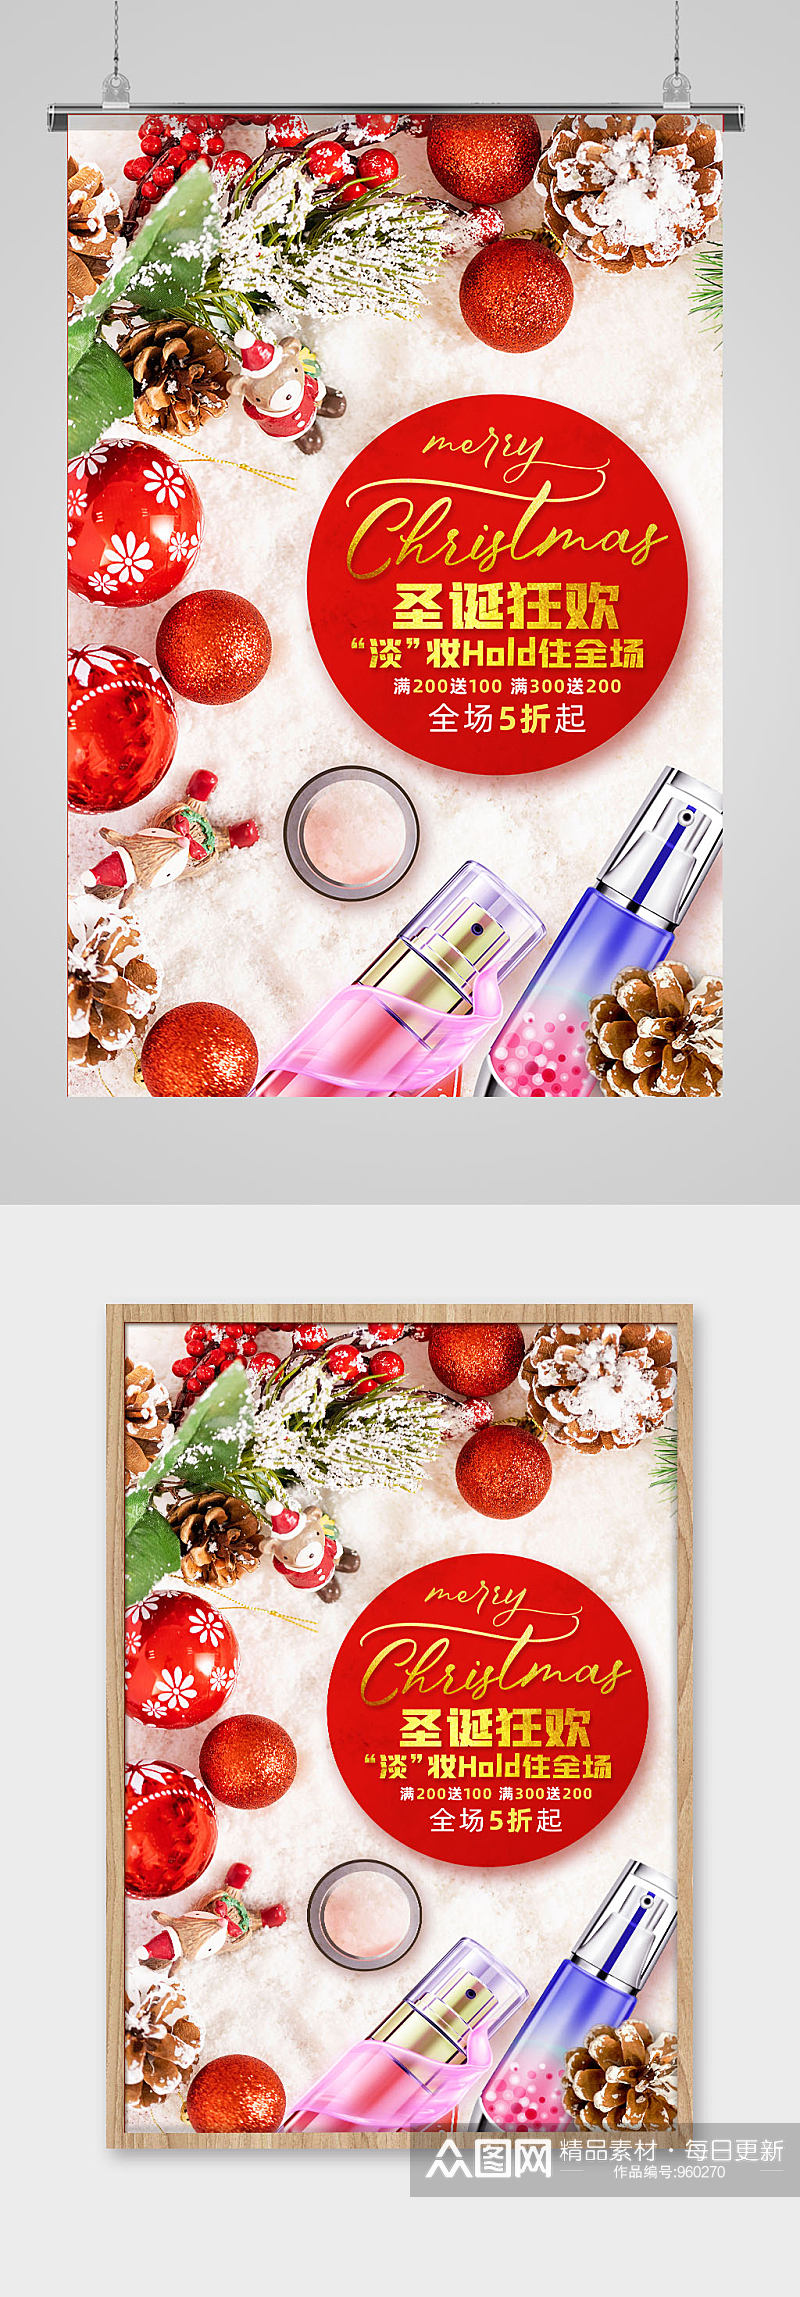 化妆品美妆产品圣诞节促销海报素材